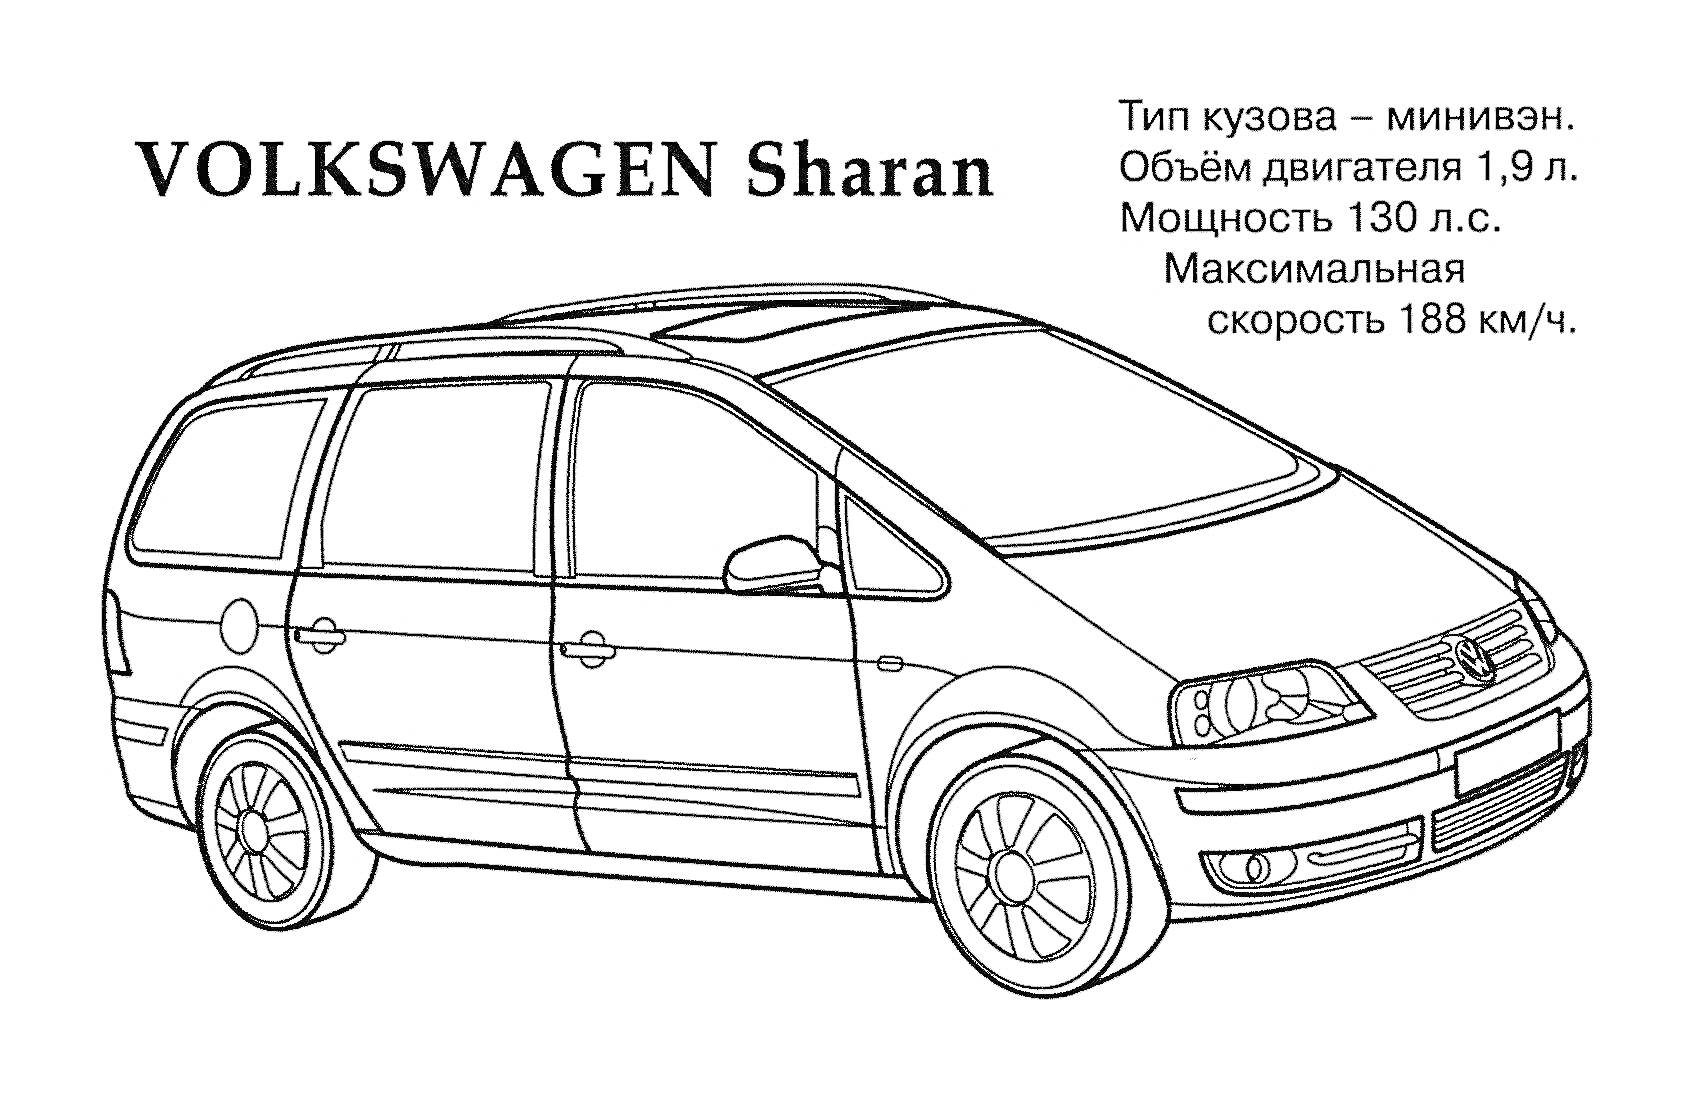 VOLKSWAGEN Sharan с информацией о типе кузова, объеме двигателя, мощности и максимальной скорости